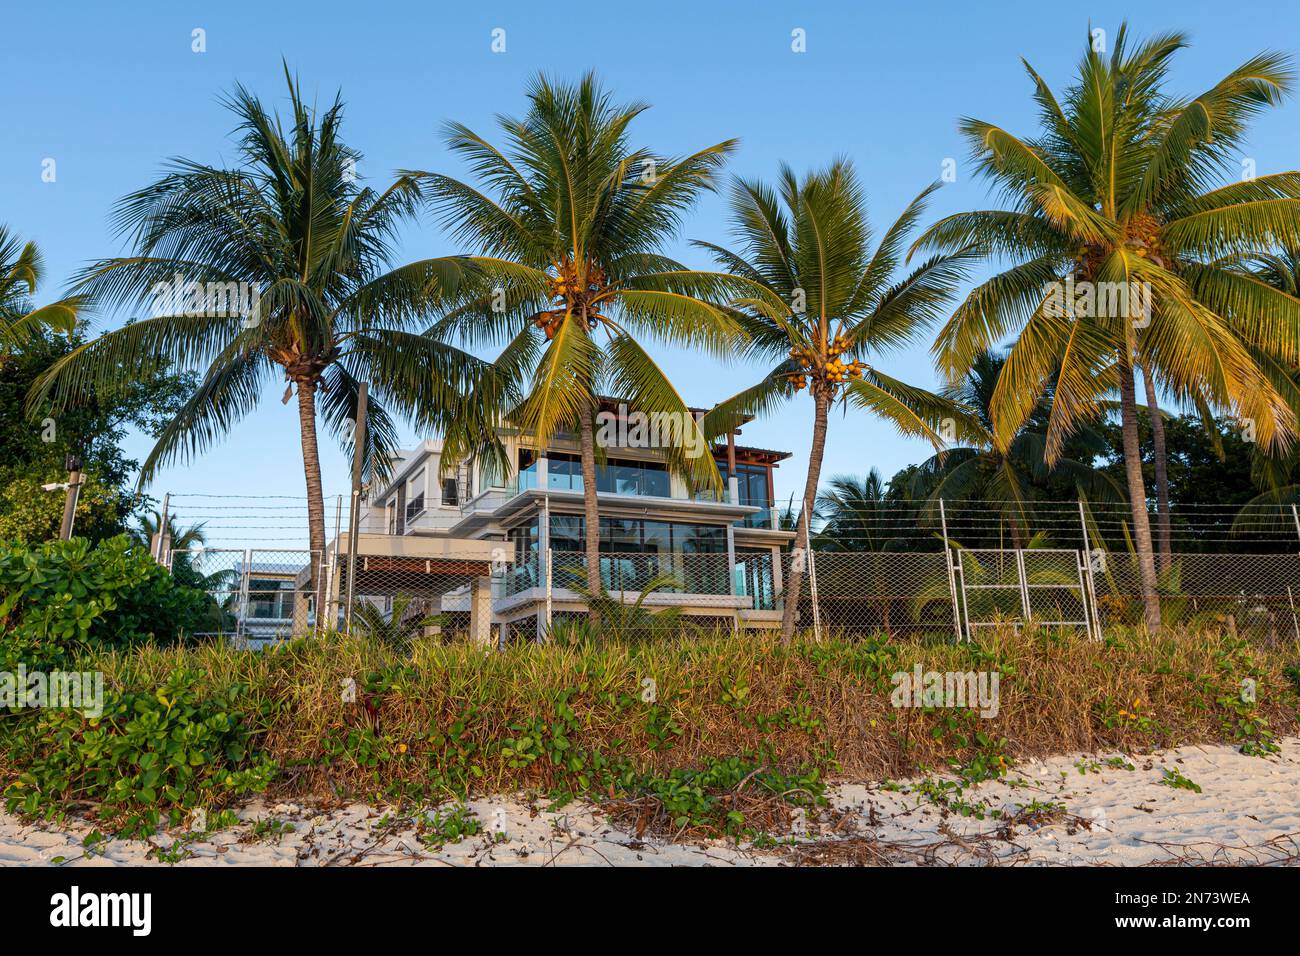 Quelques maisons à la plage de flic en flac à l'île maurice, afrique Banque D'Images